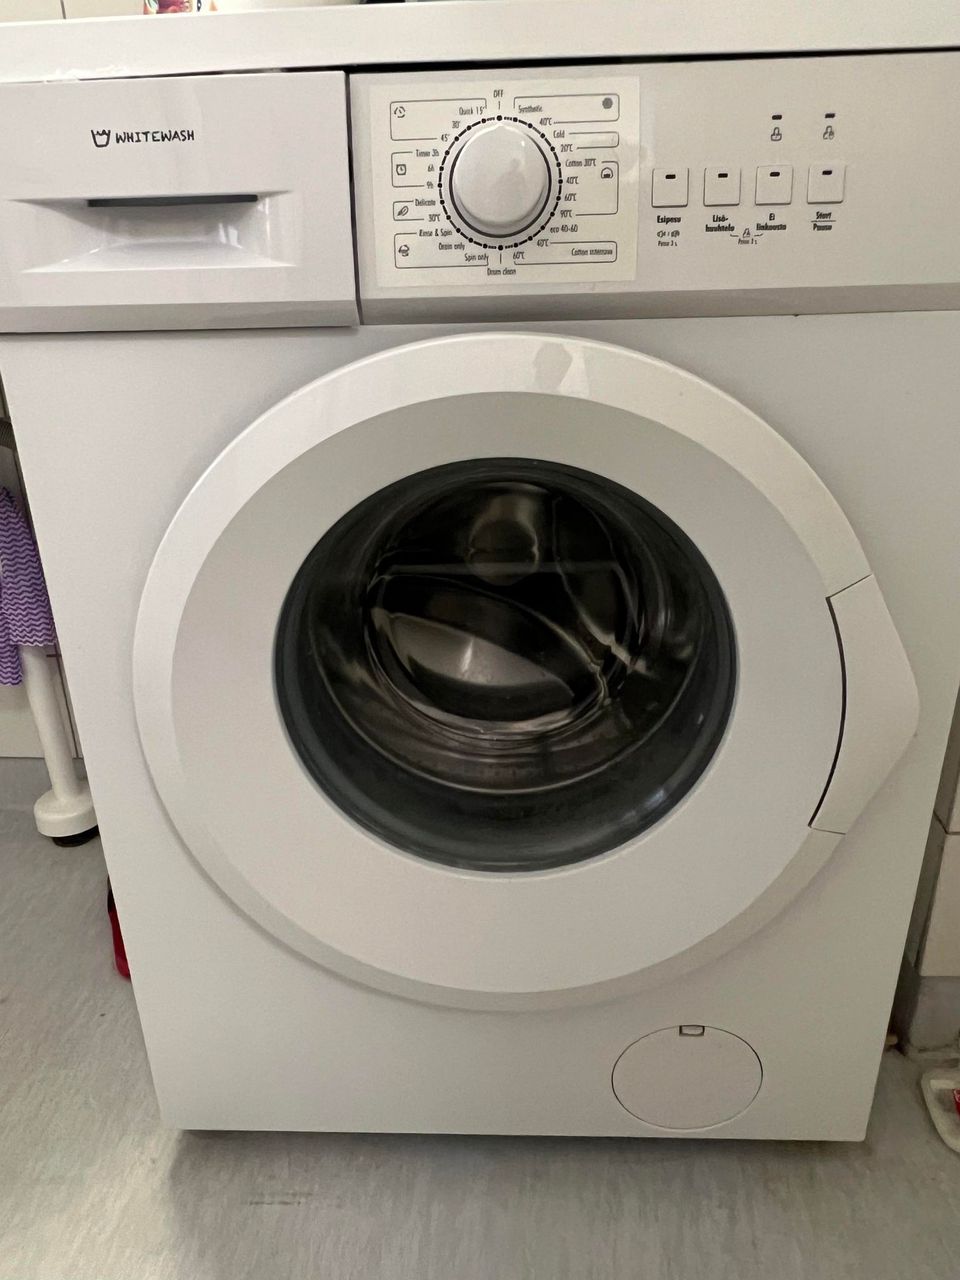 WhiteWash WM1610/01 washing machine